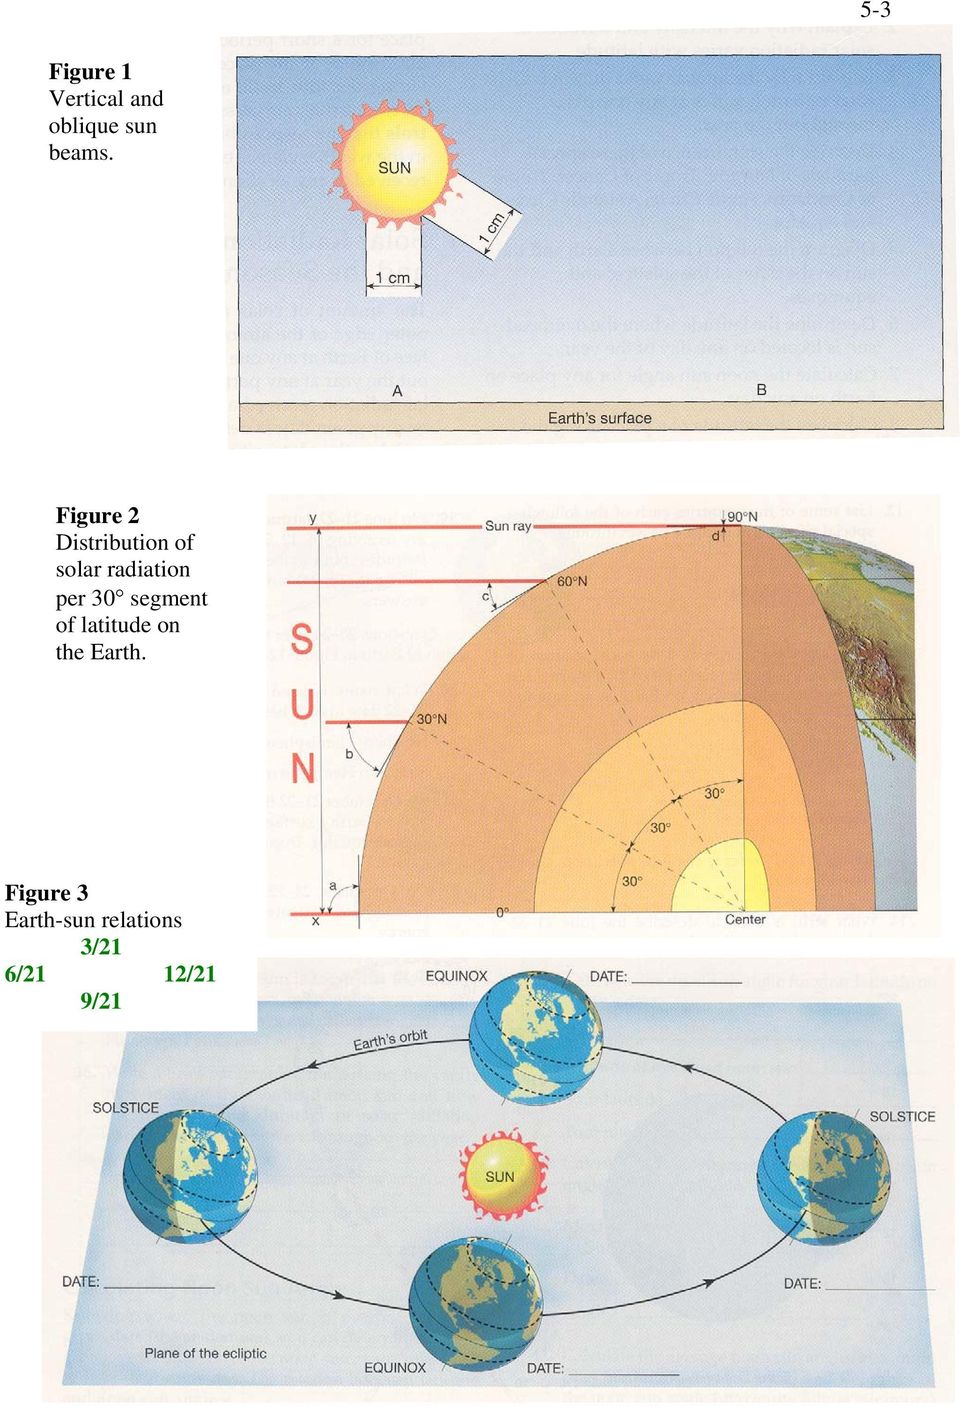 per 30 segment of latitude on the Earth.